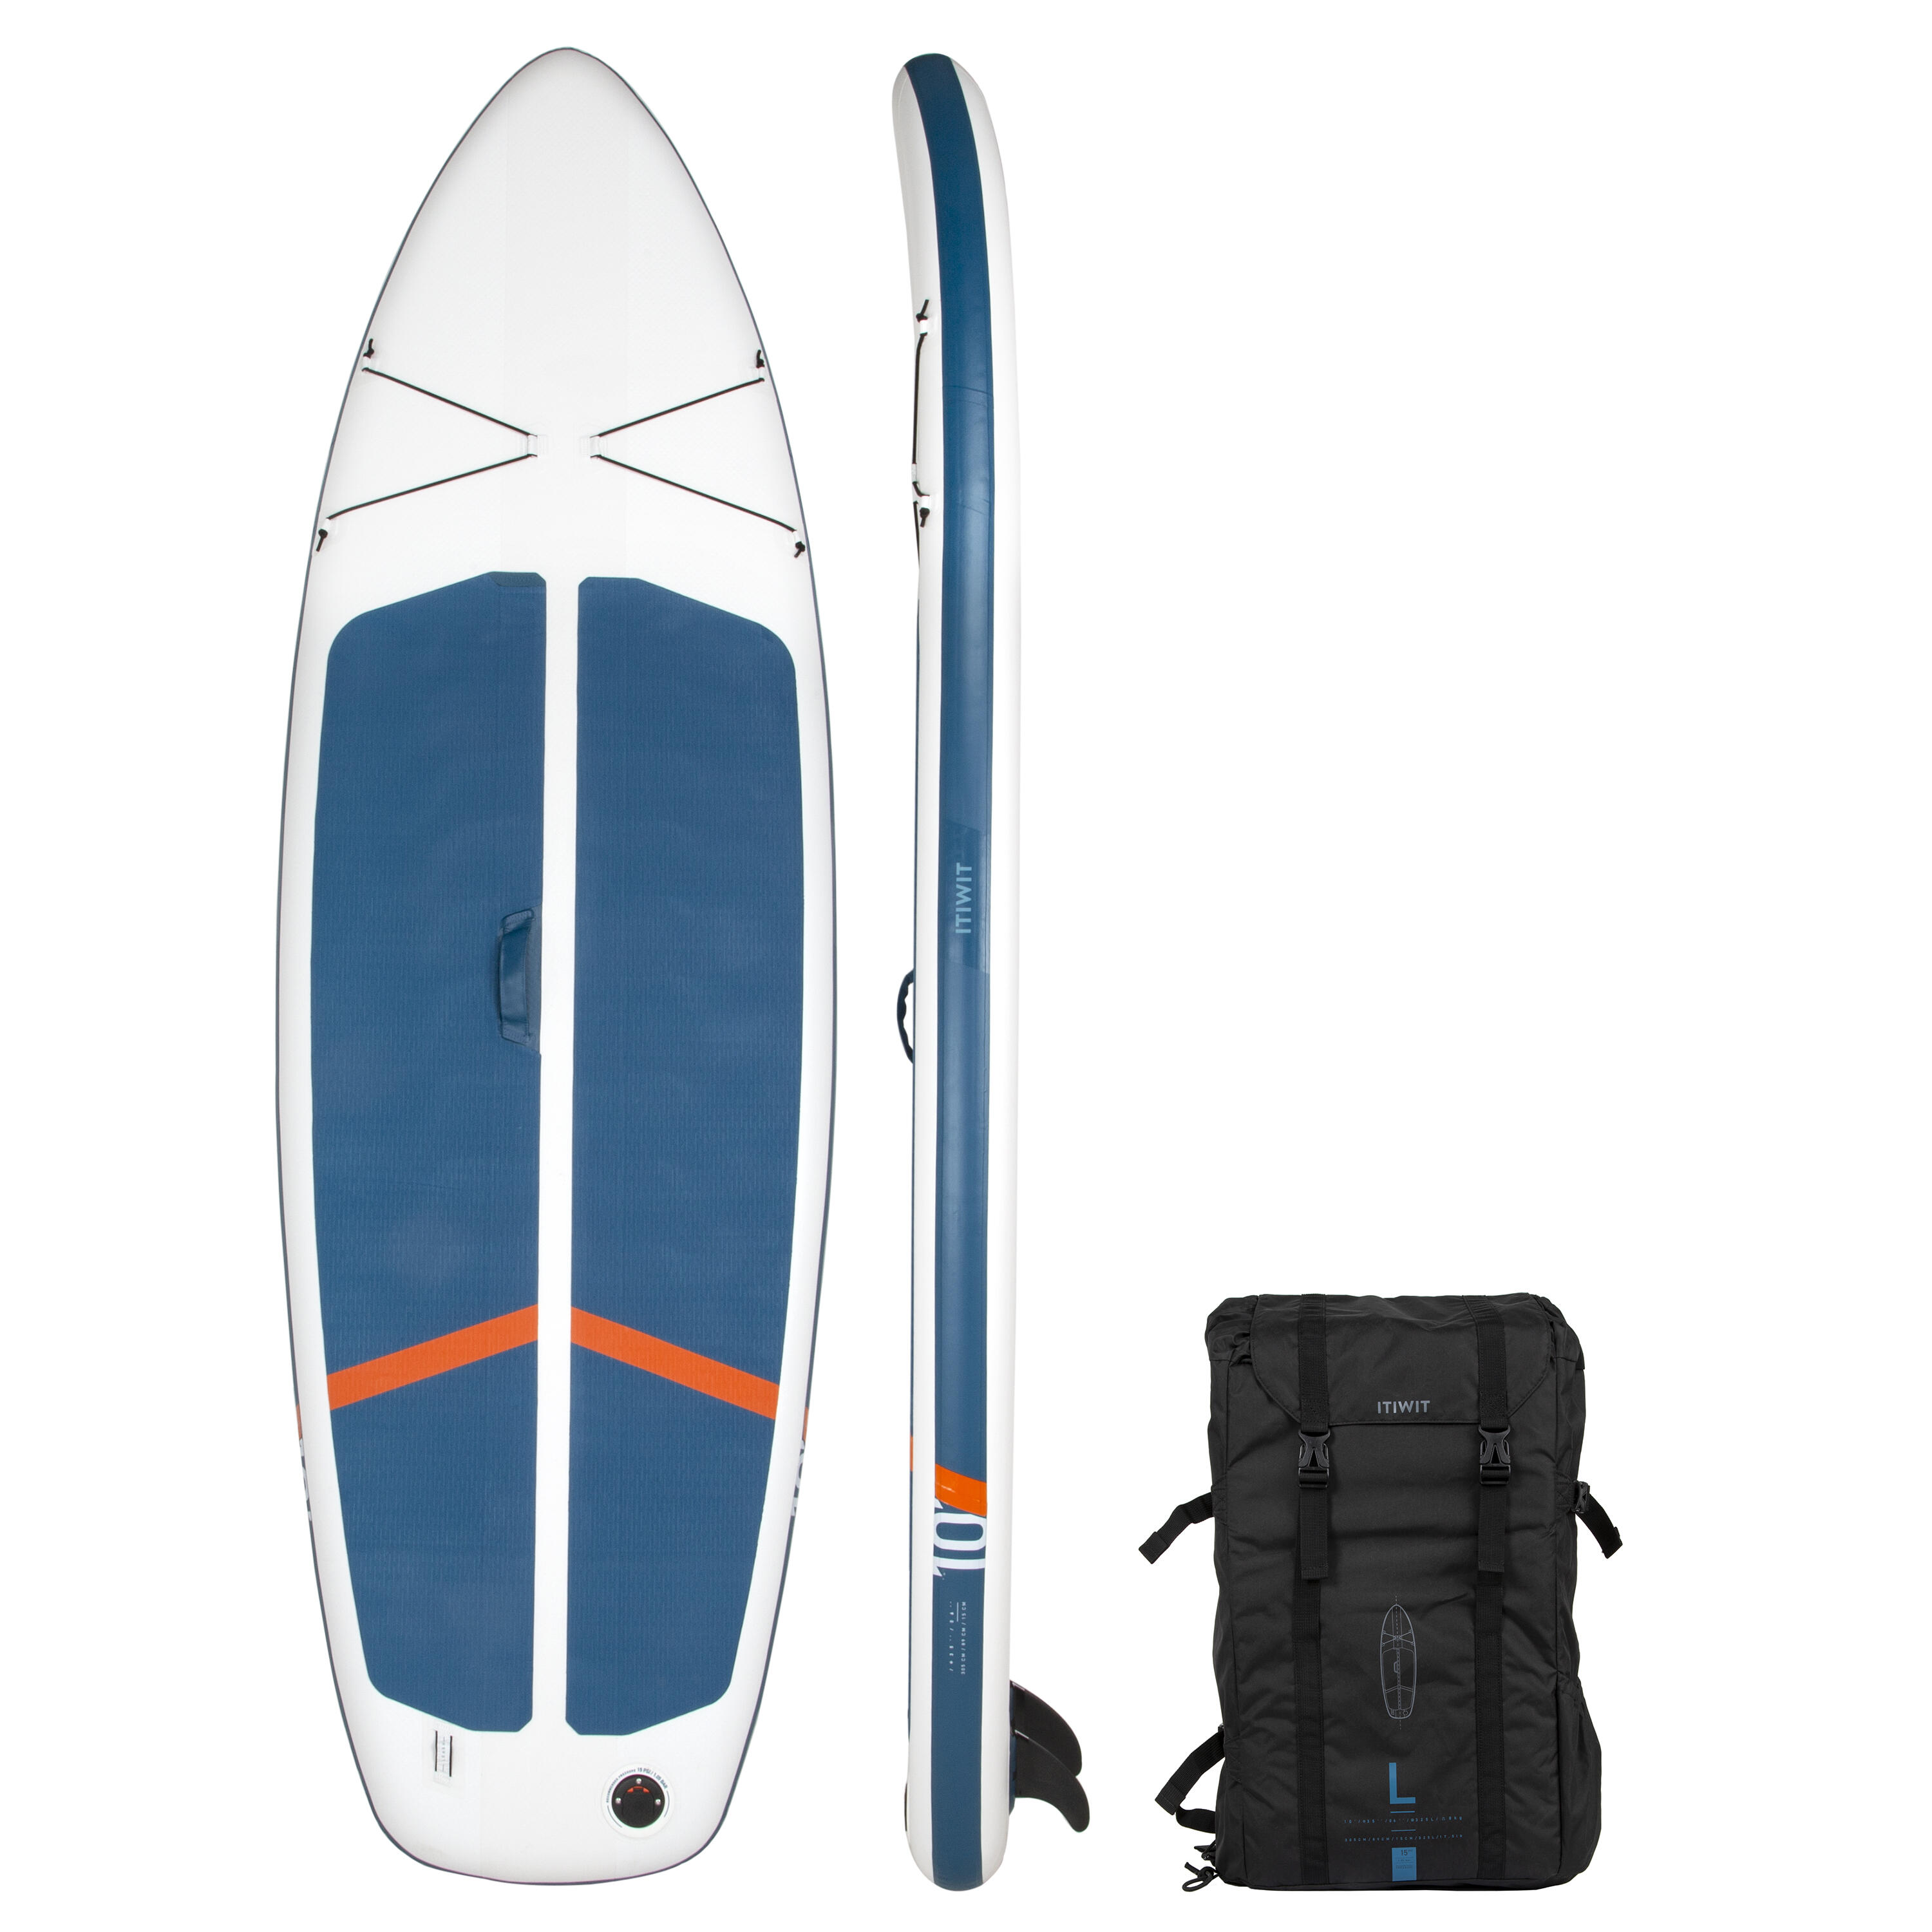 ITIWIT Stand up Paddle Board ultra kompakt und stabil 10 Fuß (max. 130 kg) - weiss/blau